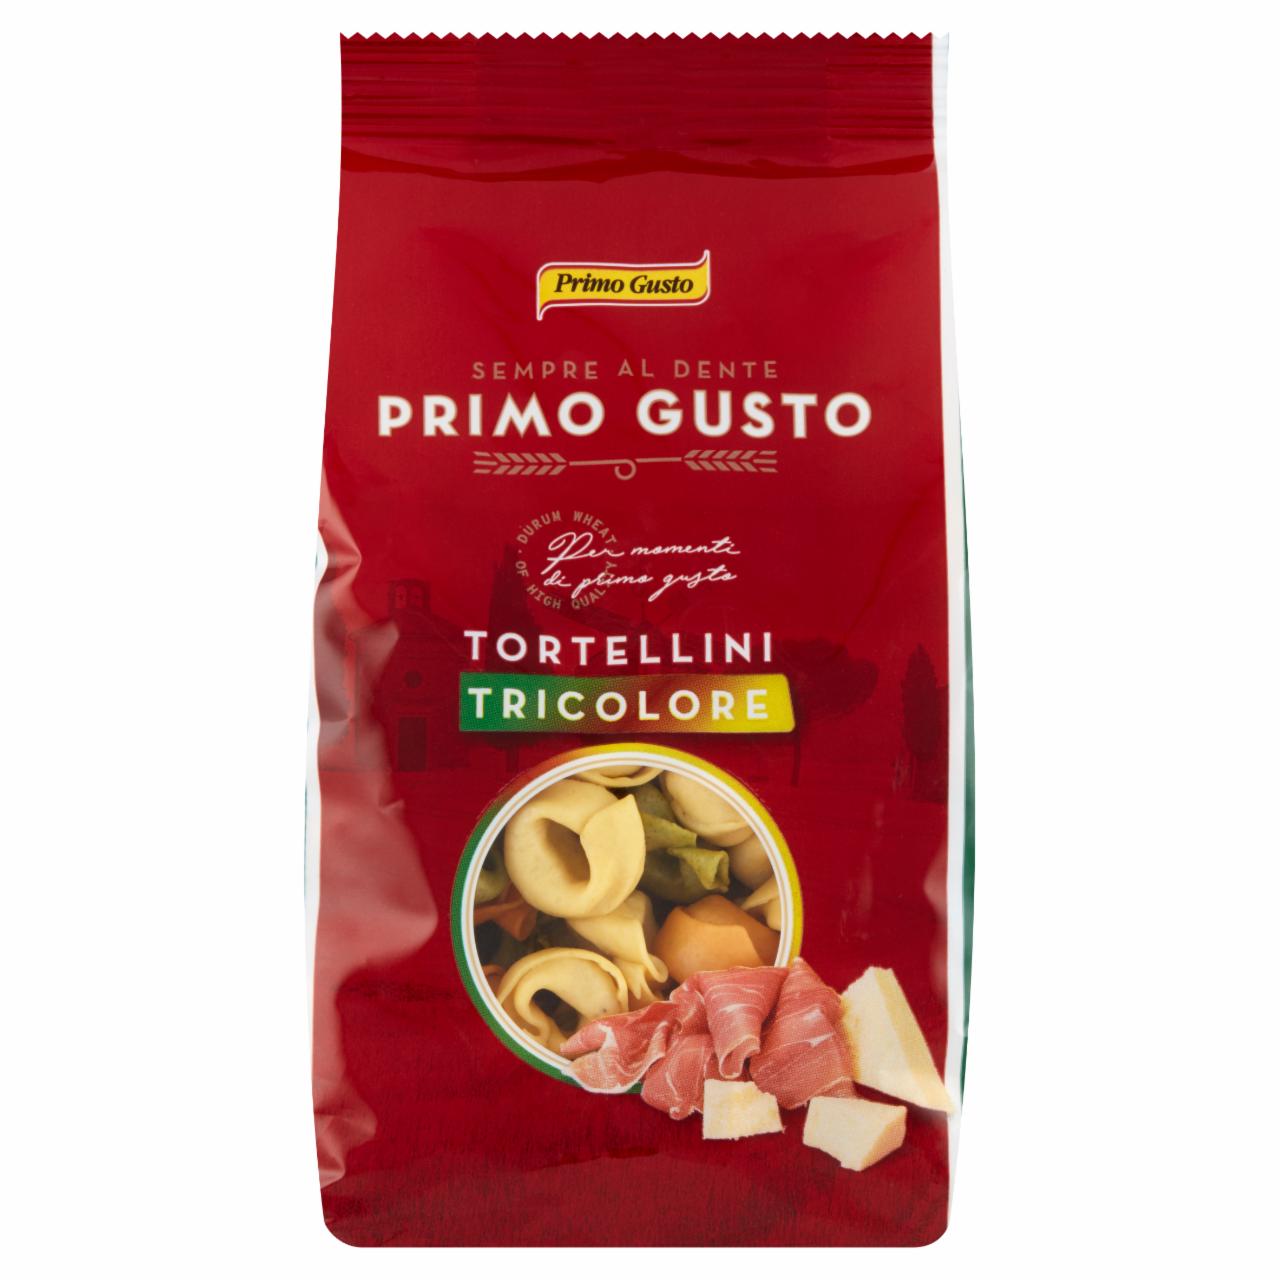 Zdjęcia - Primo Gusto Tortellini trzykolorowe z szynką prosciutto 250 g